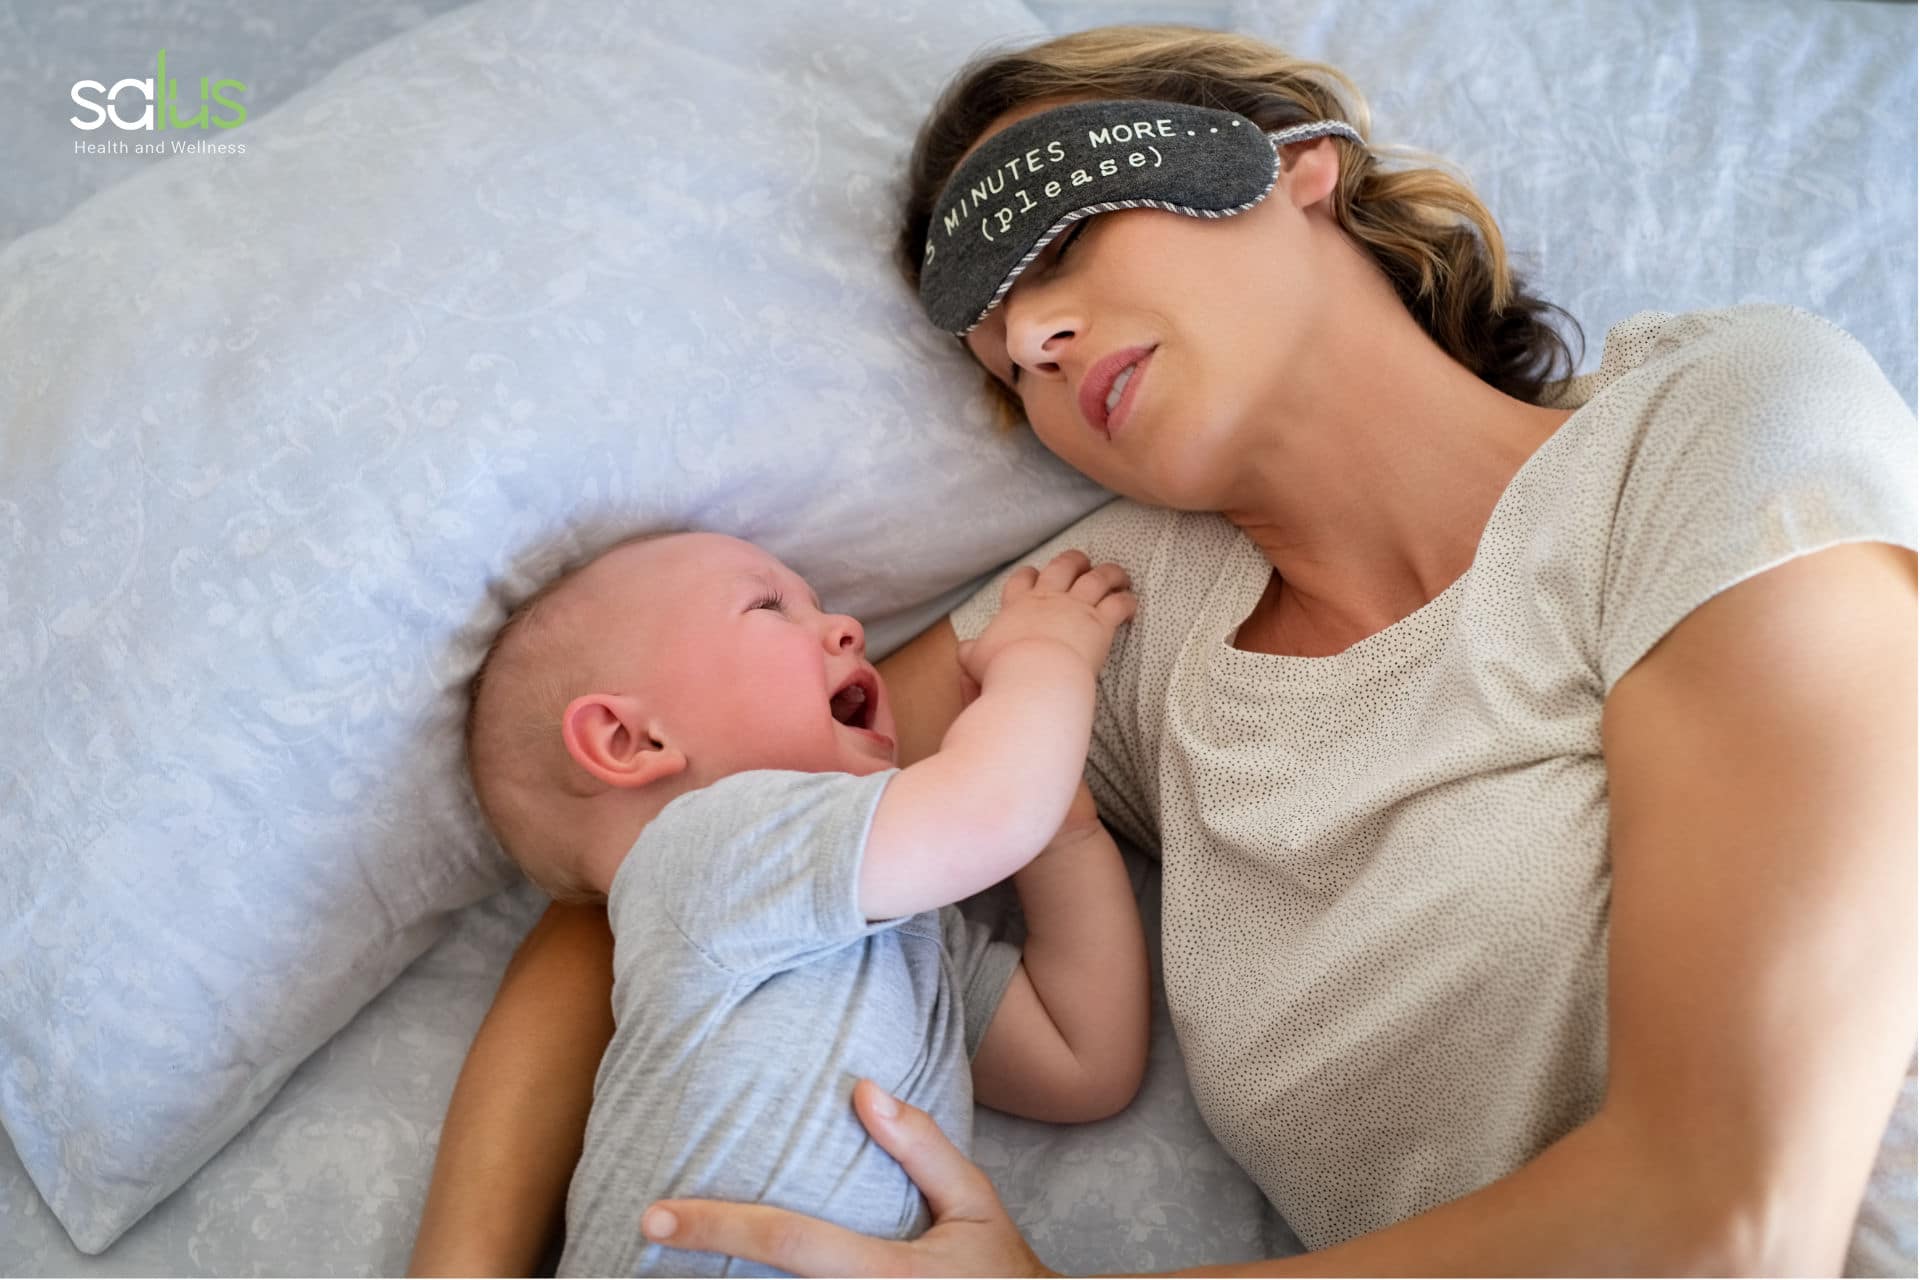 salus-blog-quando-il-bambino-non-dorme-come-tranquillizzarlo